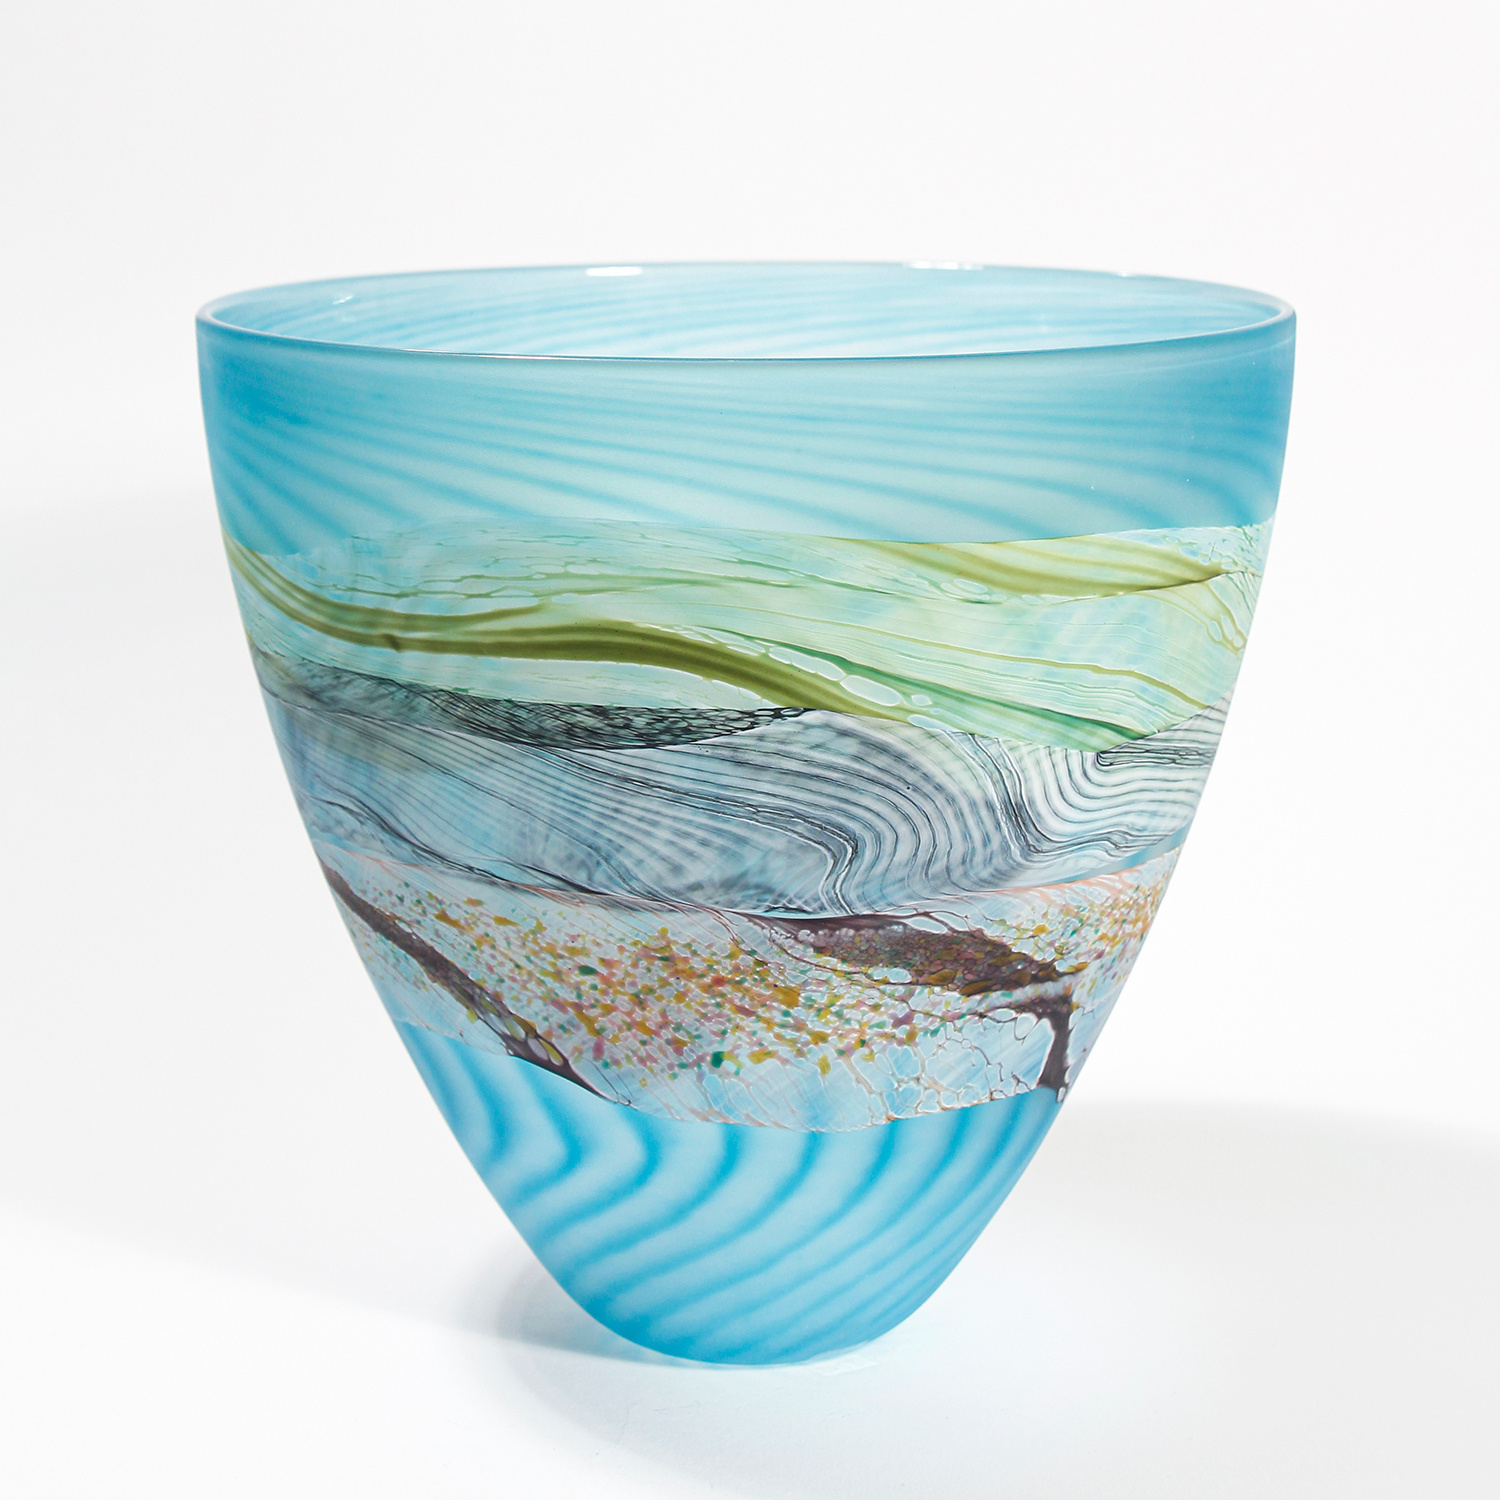 Flint Bowl, medium by Thomas Petit